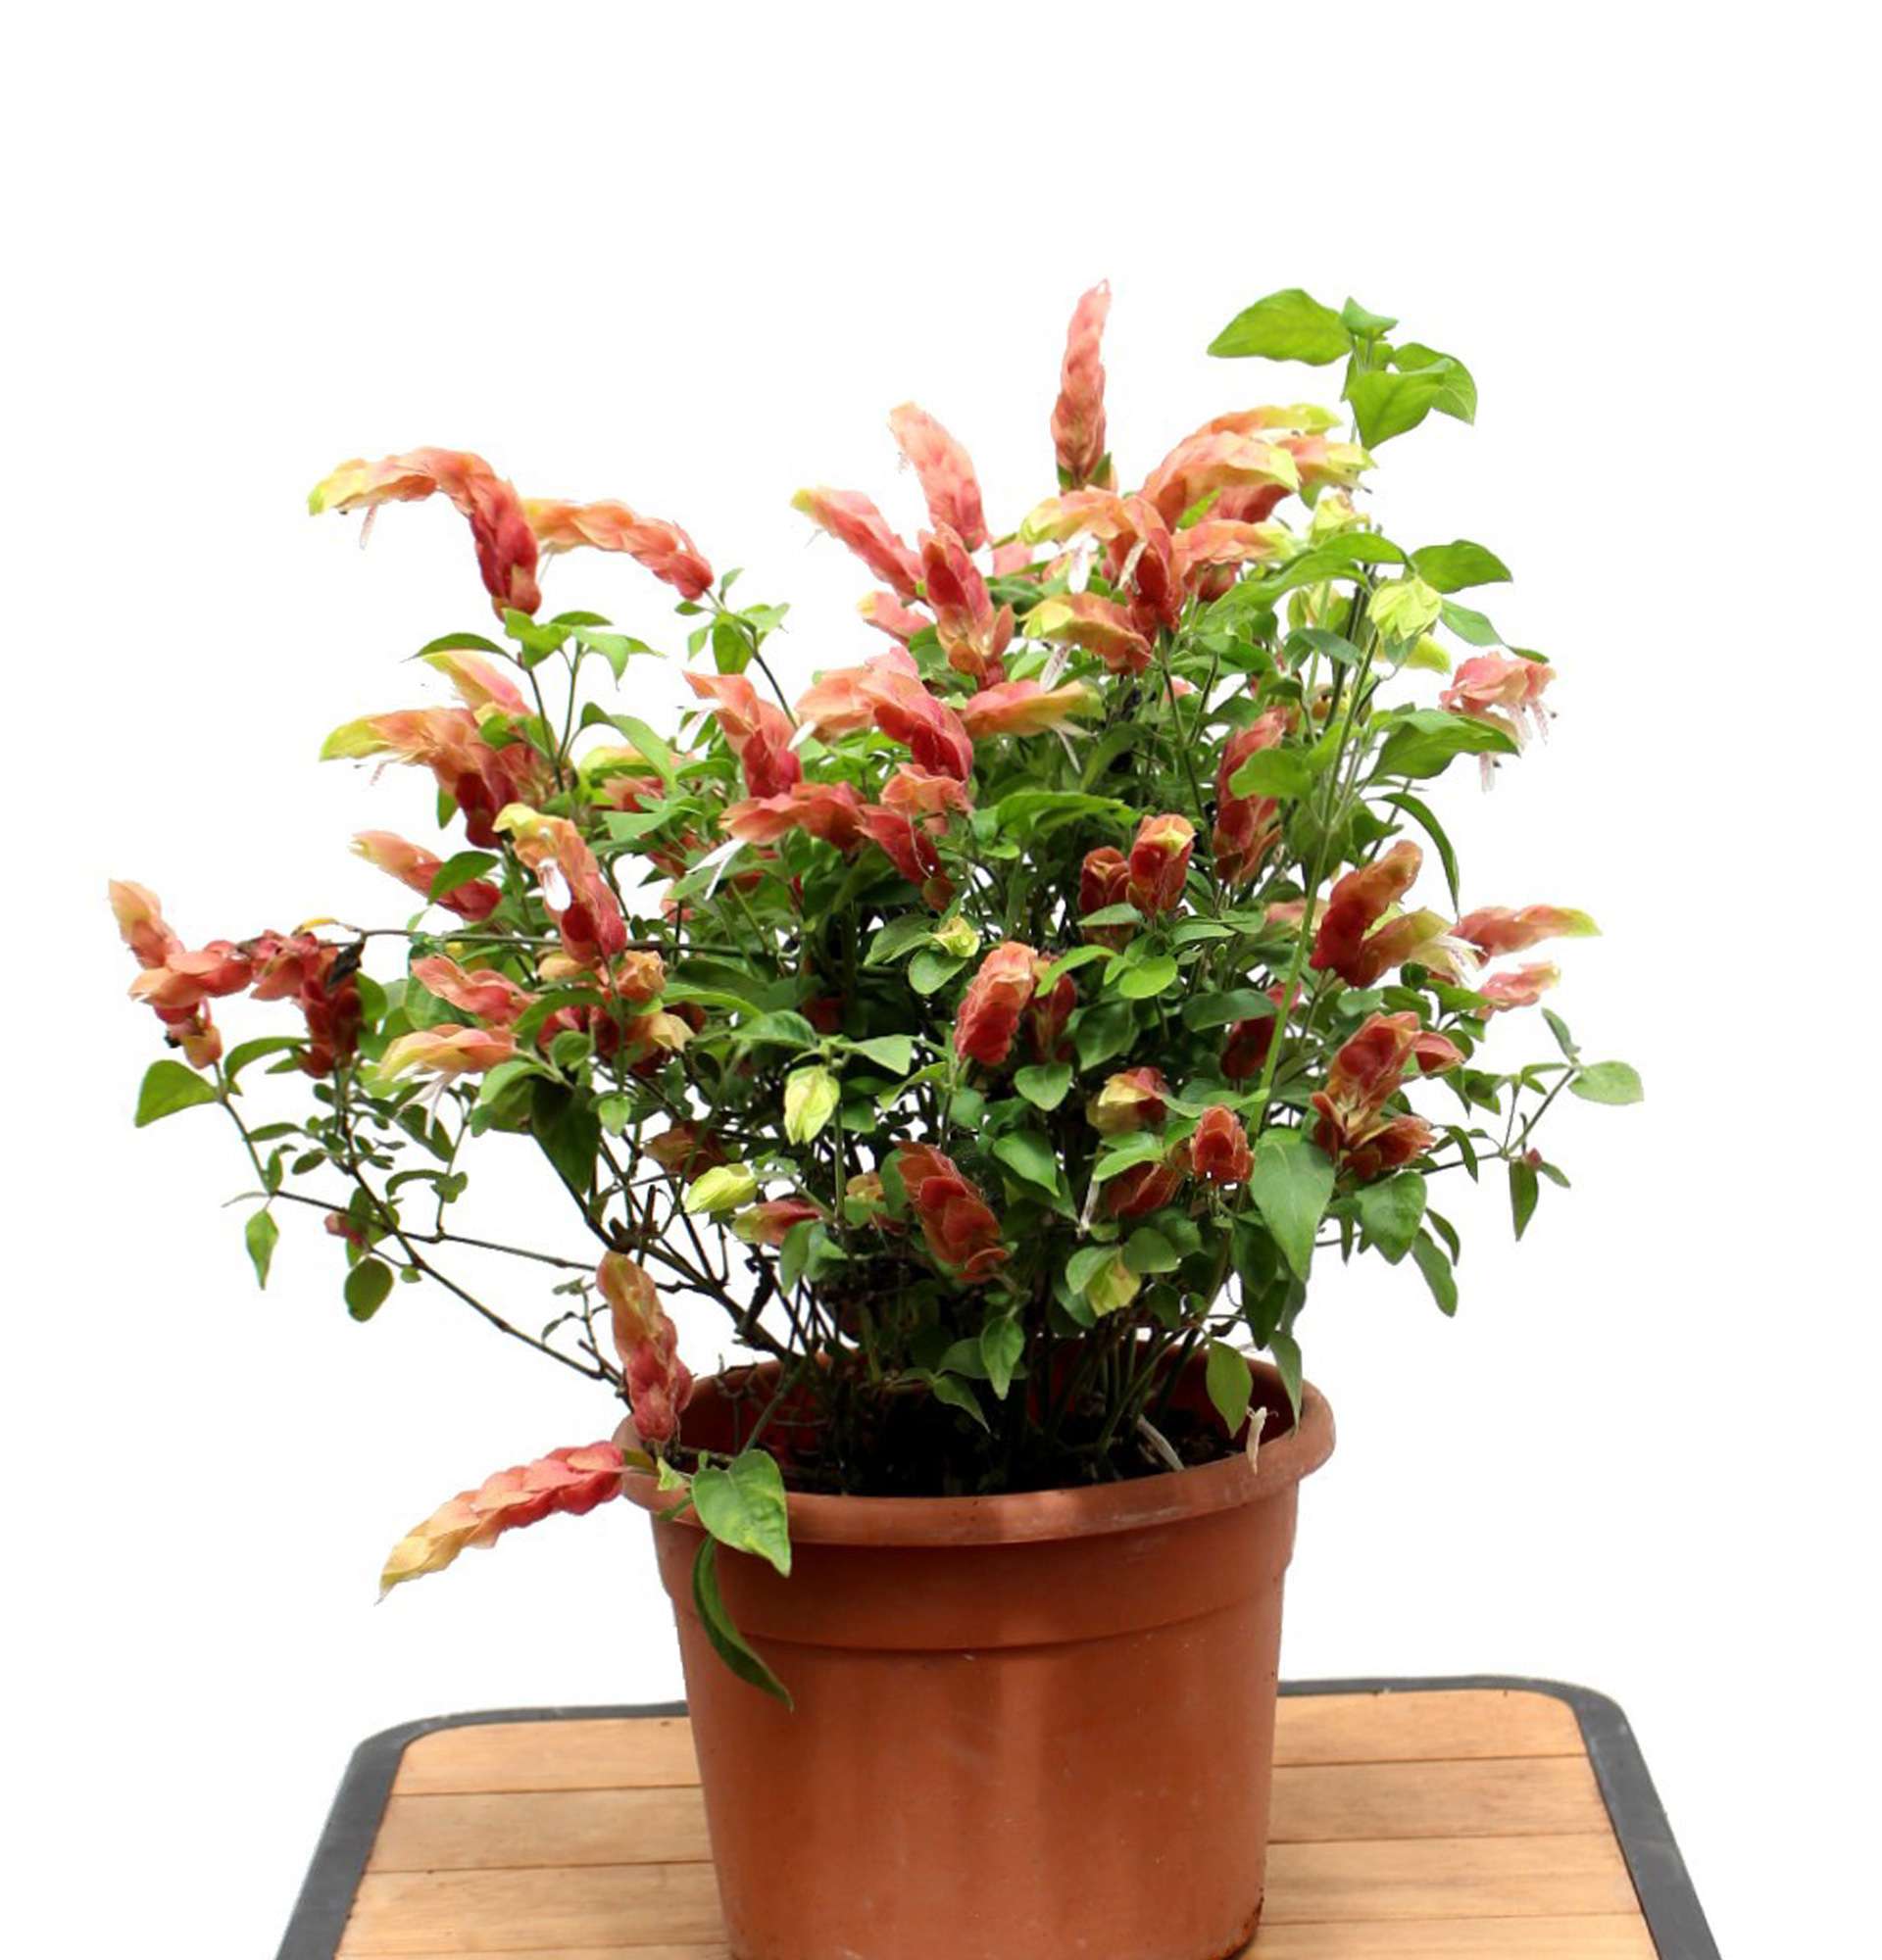  растение раковая шейка фото - цветок креветка